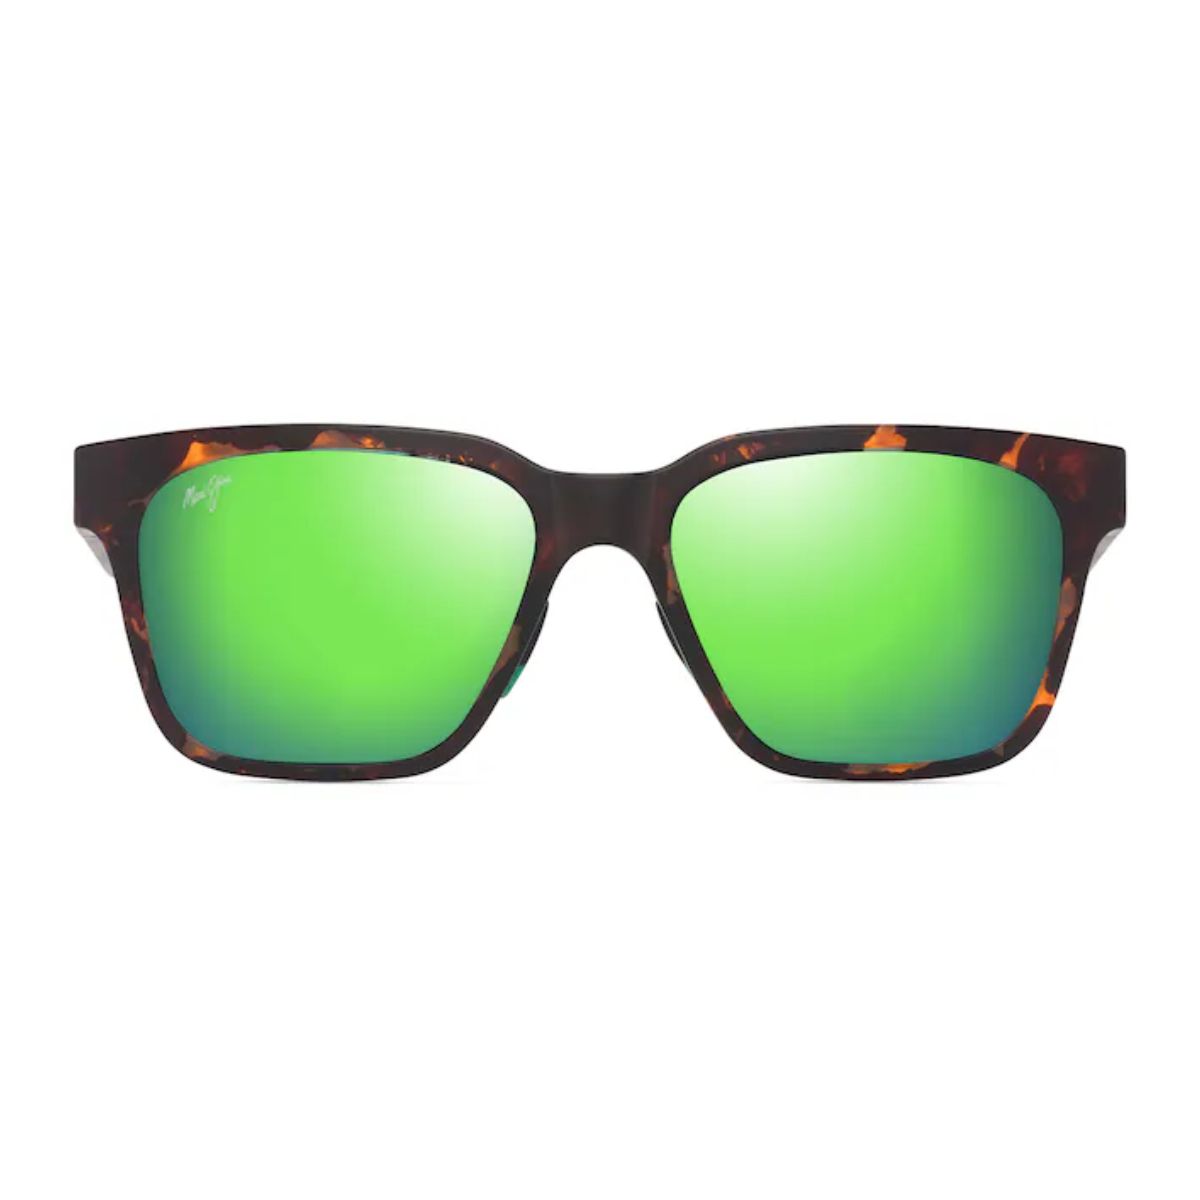 "Shop Stylish Maui Jim Square Shape Polarized Sunglasses For Men's At Optorium Online Store | Offer Maui Jim Sunglasses"